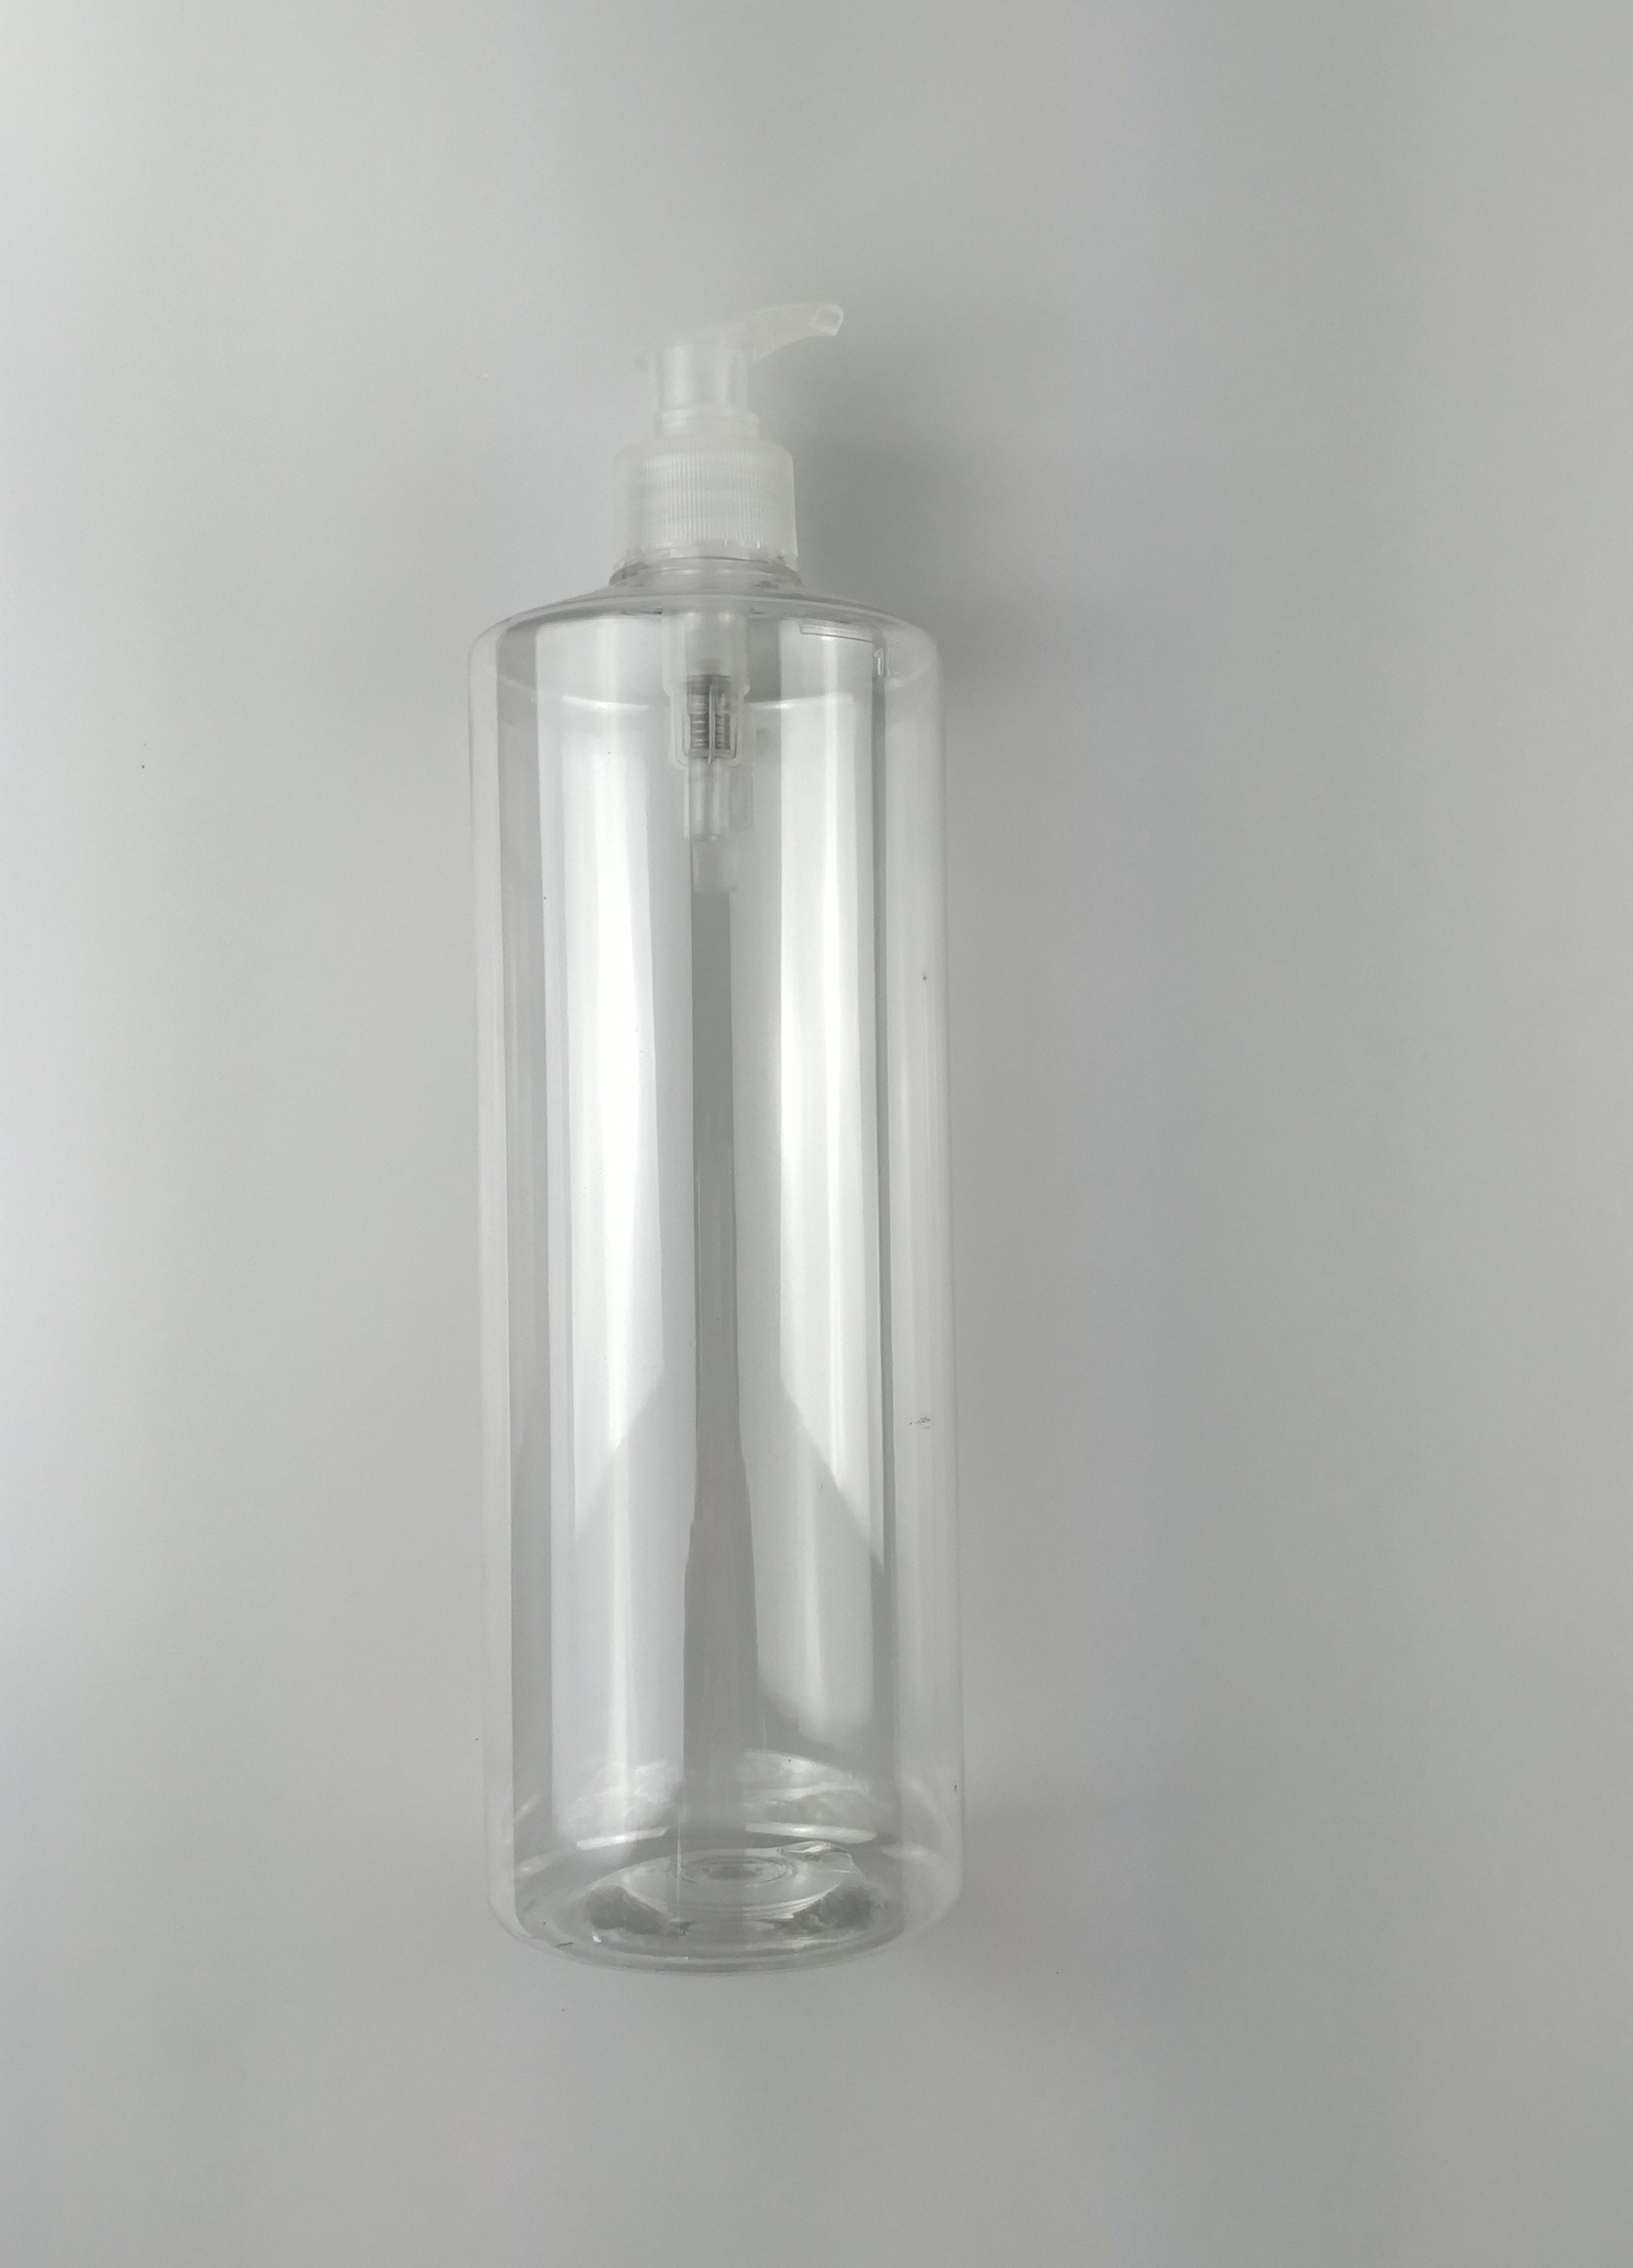 1L prazna plastična boca šampona s ravnim ramenom, dobavljač prozirnog spremnika